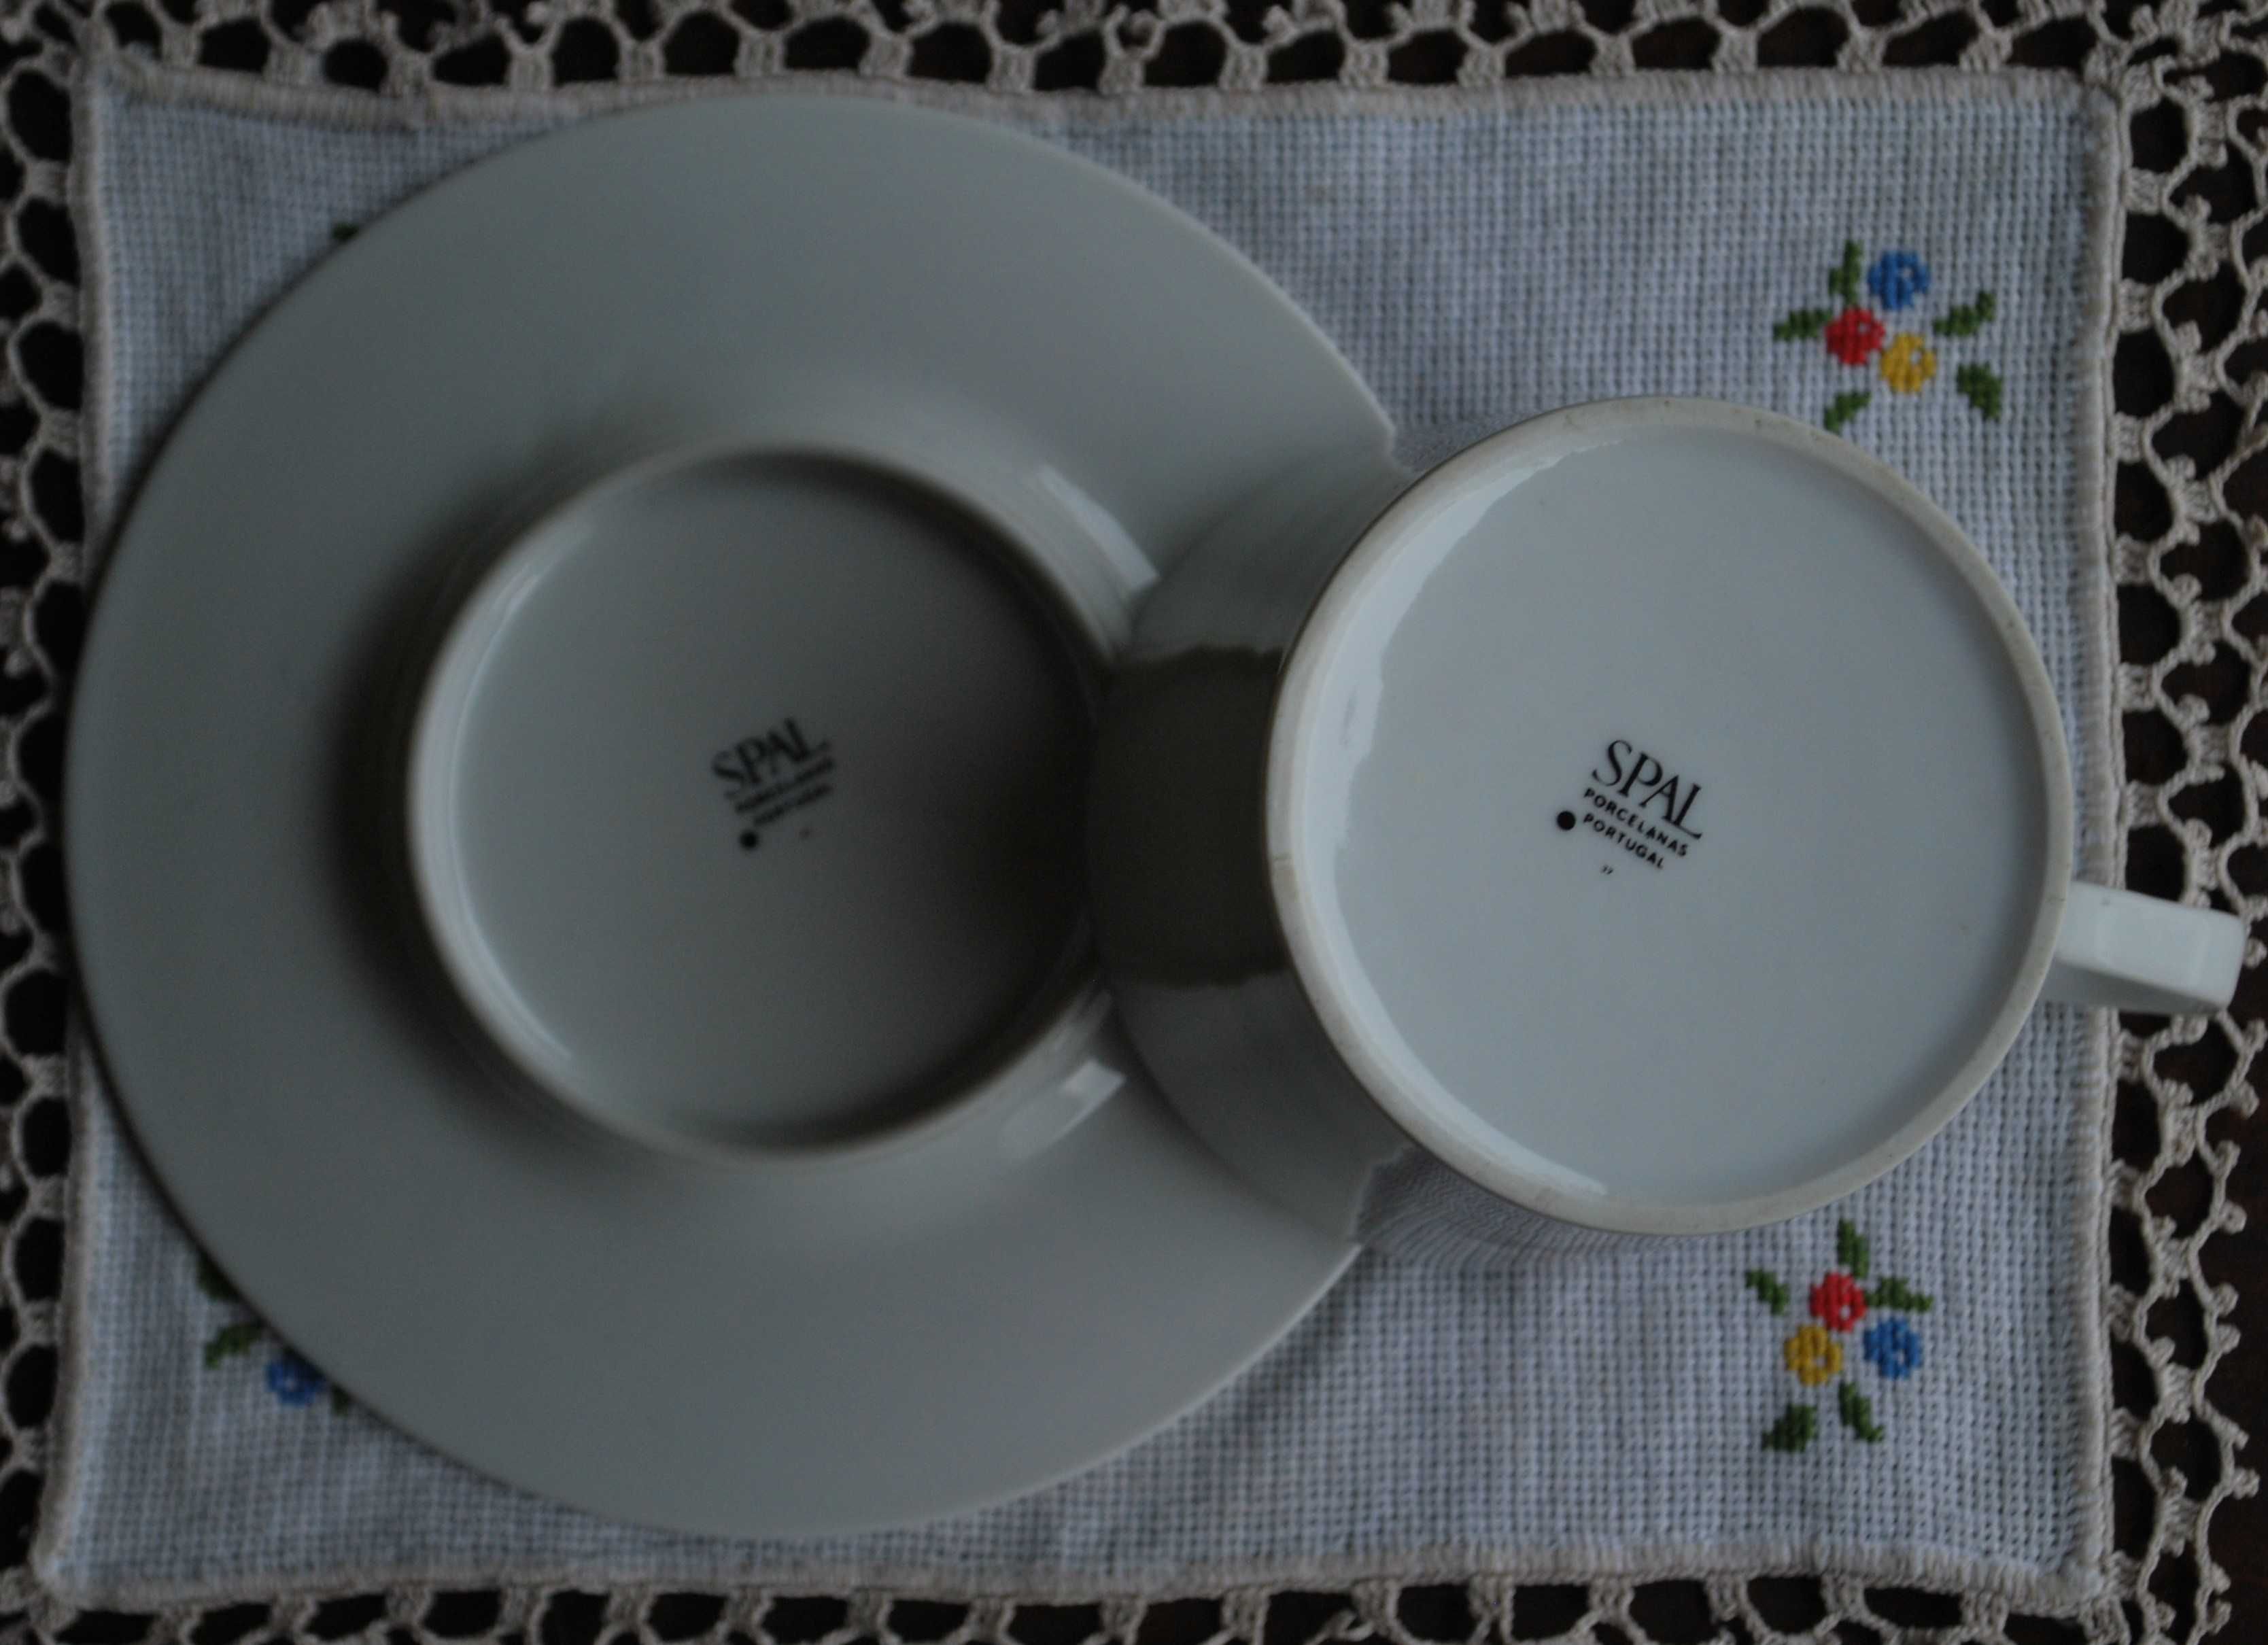 Chávena e Pires Porcelana Antigos da Spal - Sociedade de Porcelanas